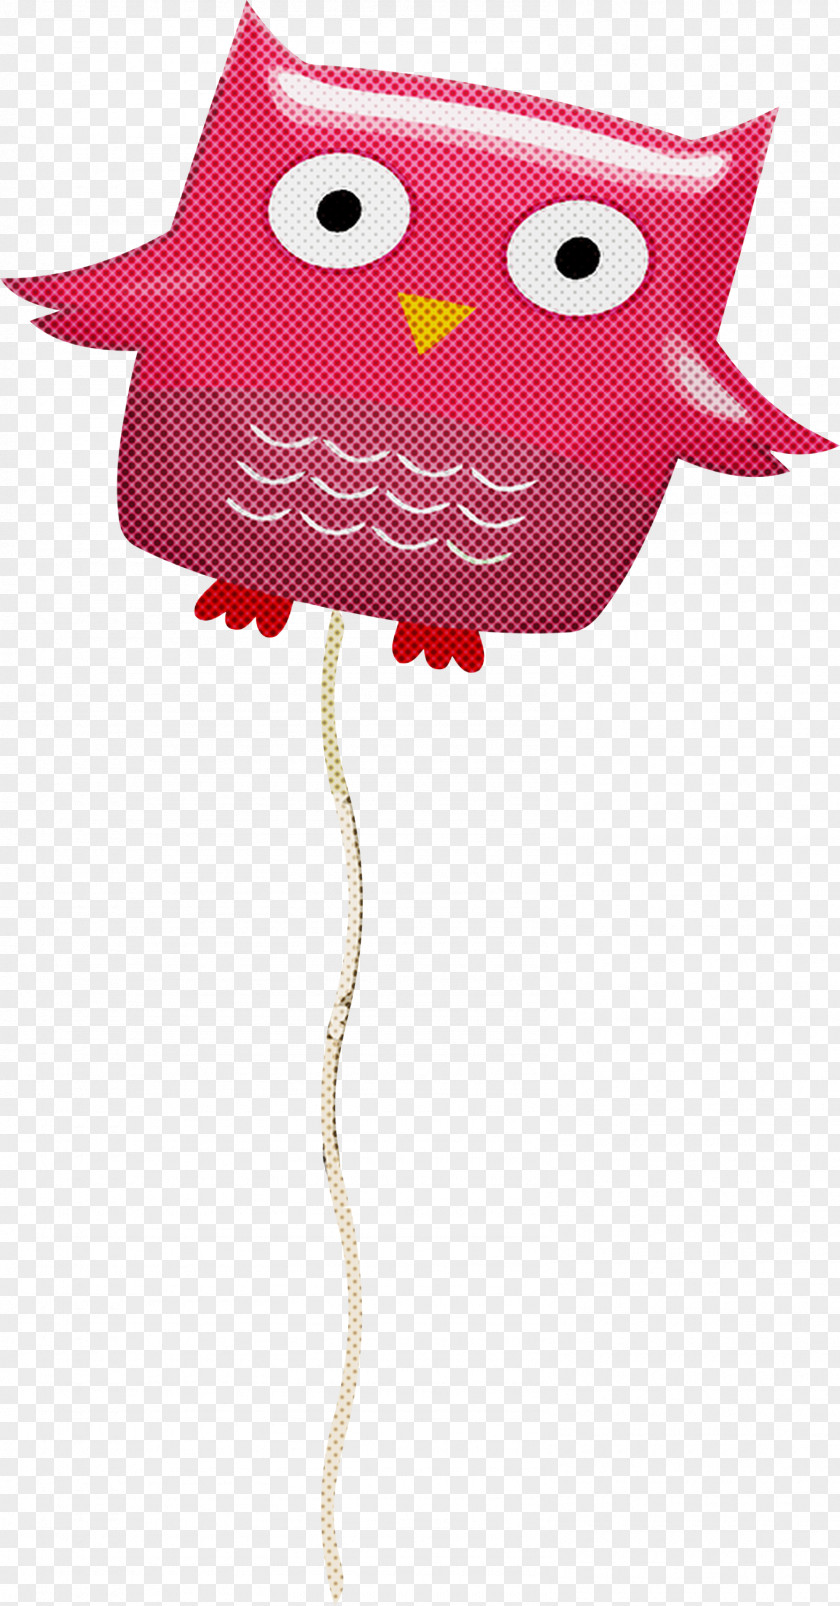 Birds Cartoon Character Beak Meter PNG